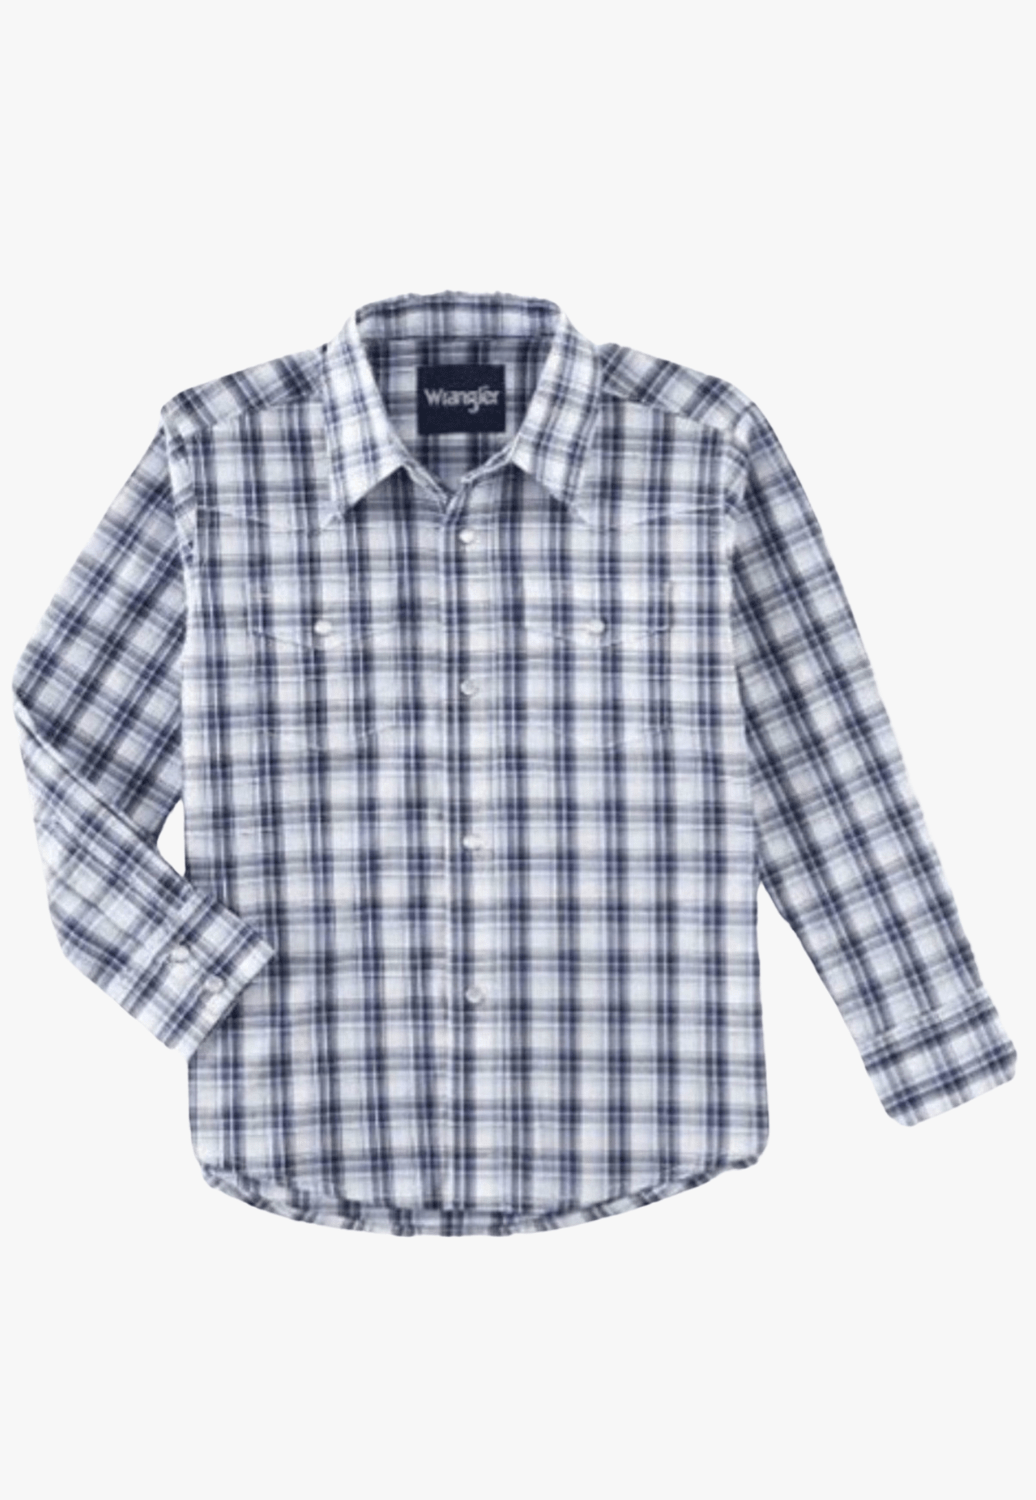 Wrangler CLOTHING-Boys Long Sleeve Shirts Wrangler Boys Wrinkle Resistant Long Sleeve Shirt